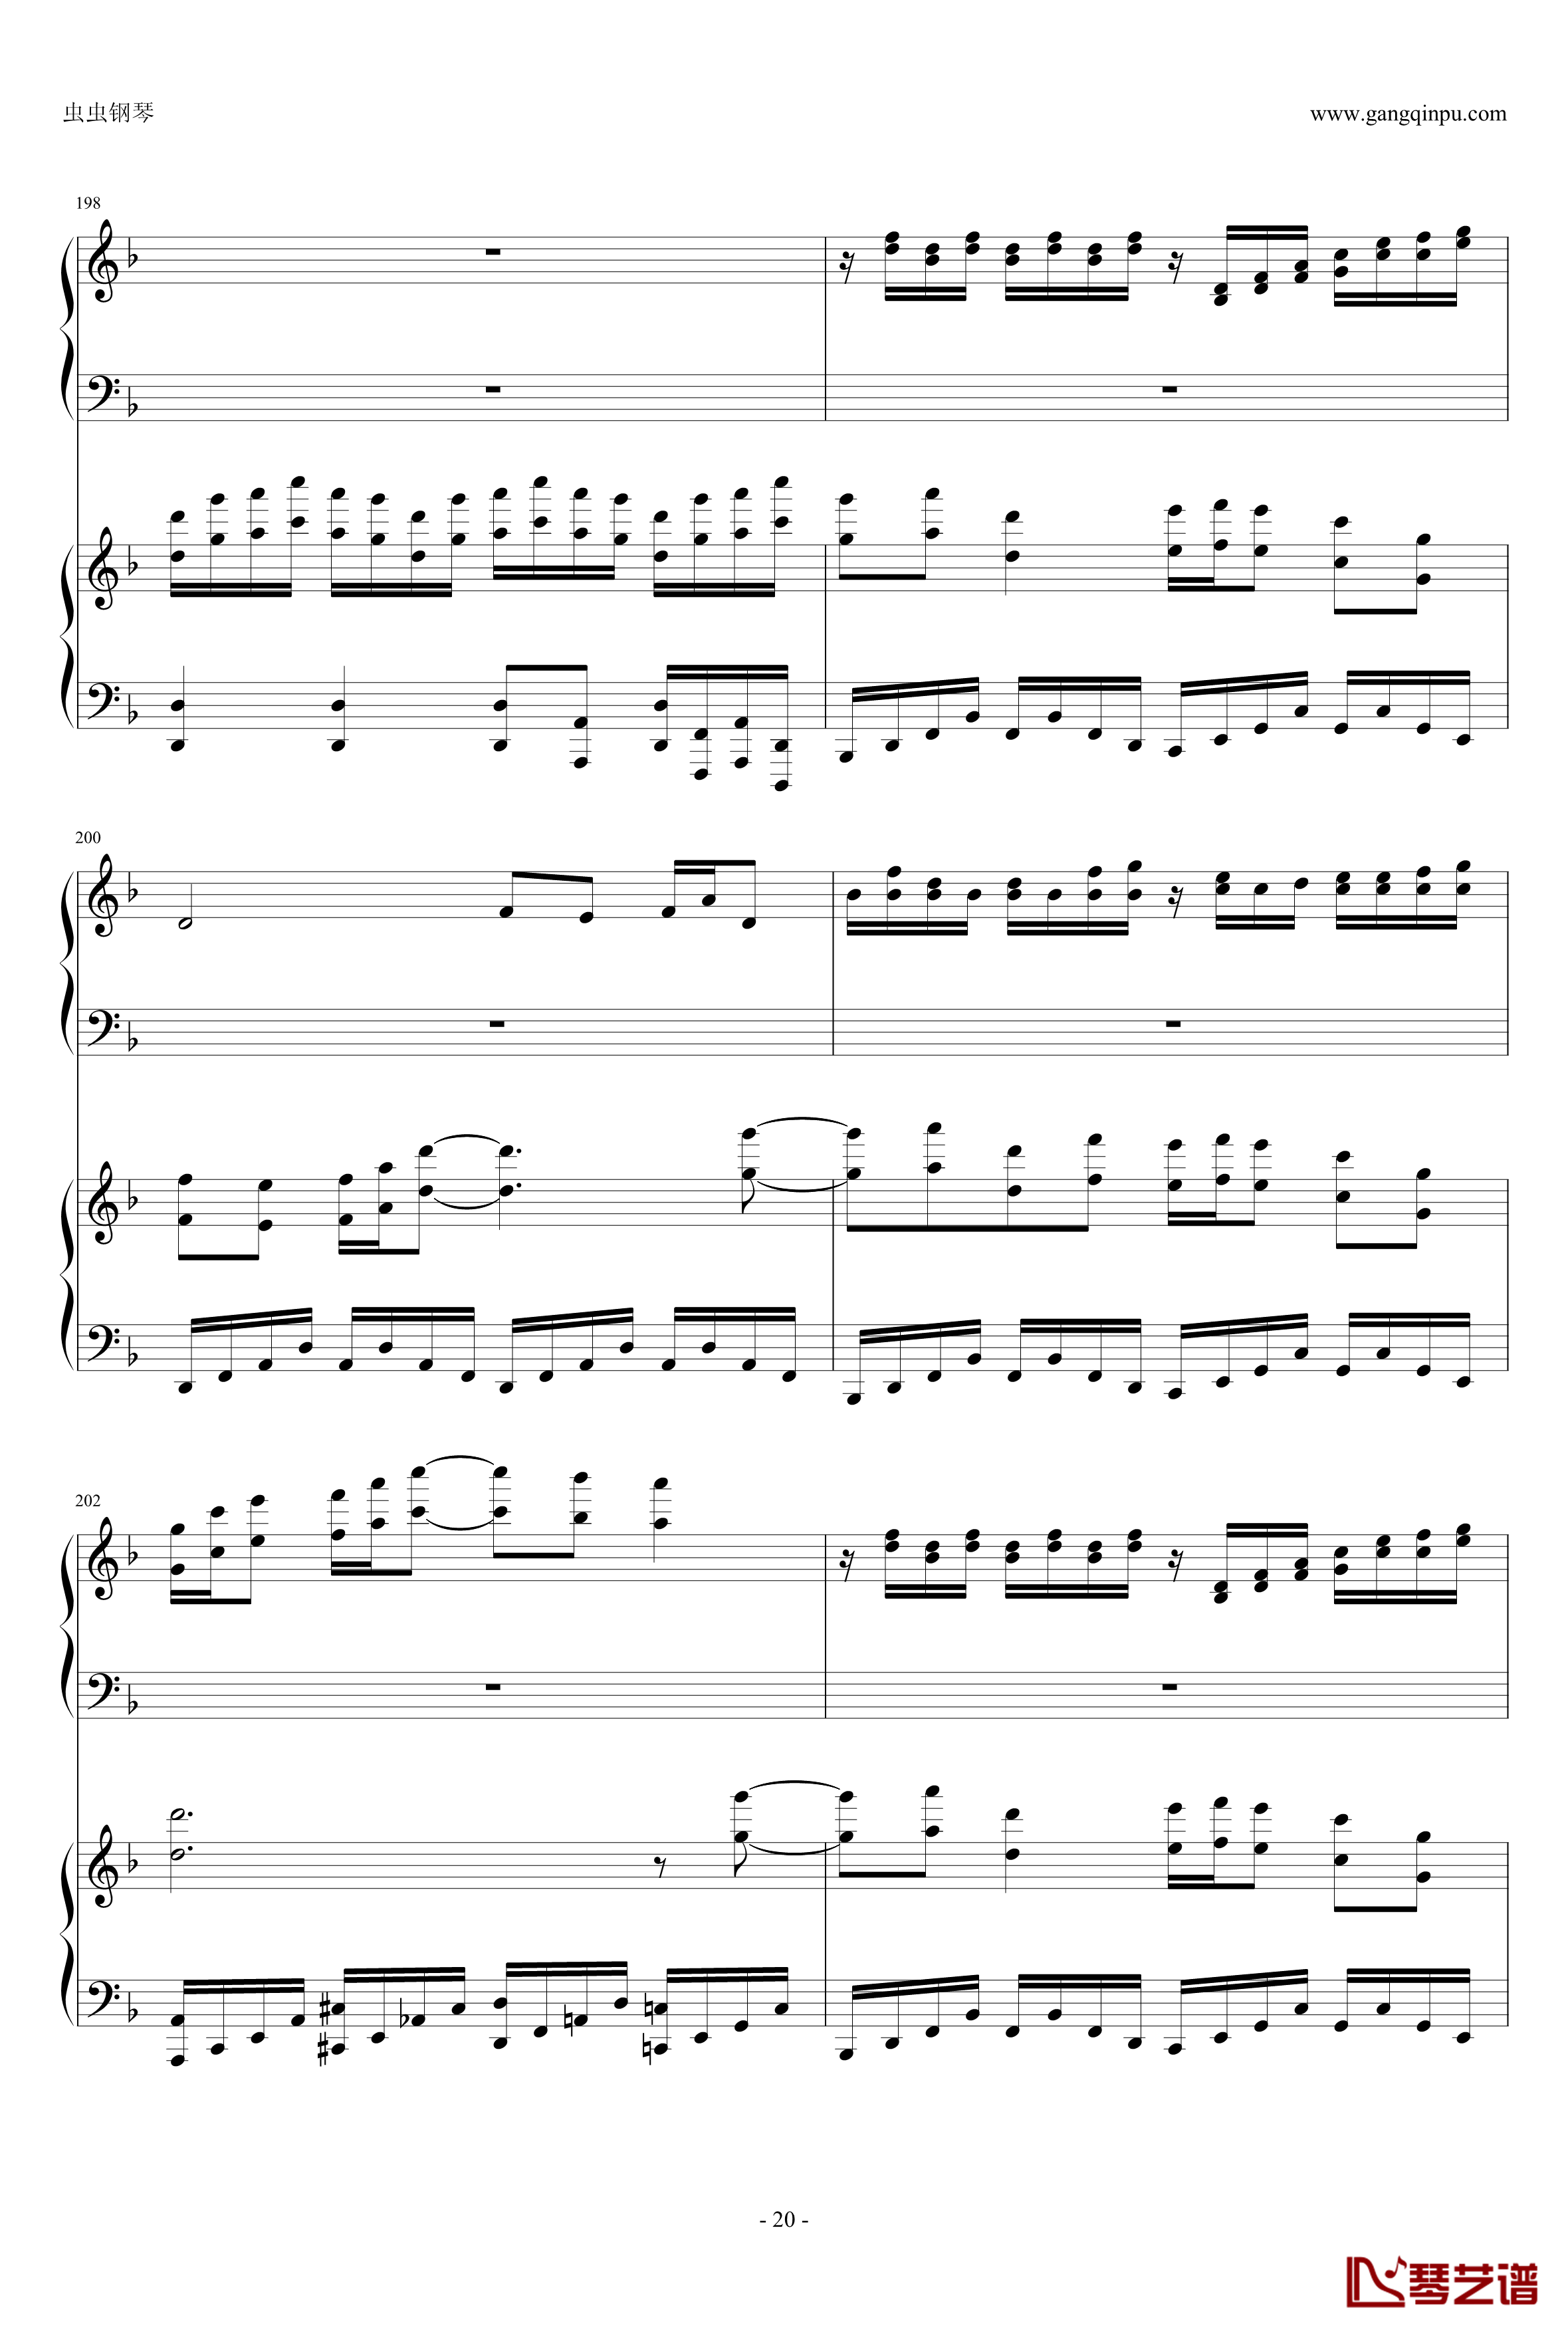 東方連奏曲II Pianoforte钢琴谱-第一部分-东方project20